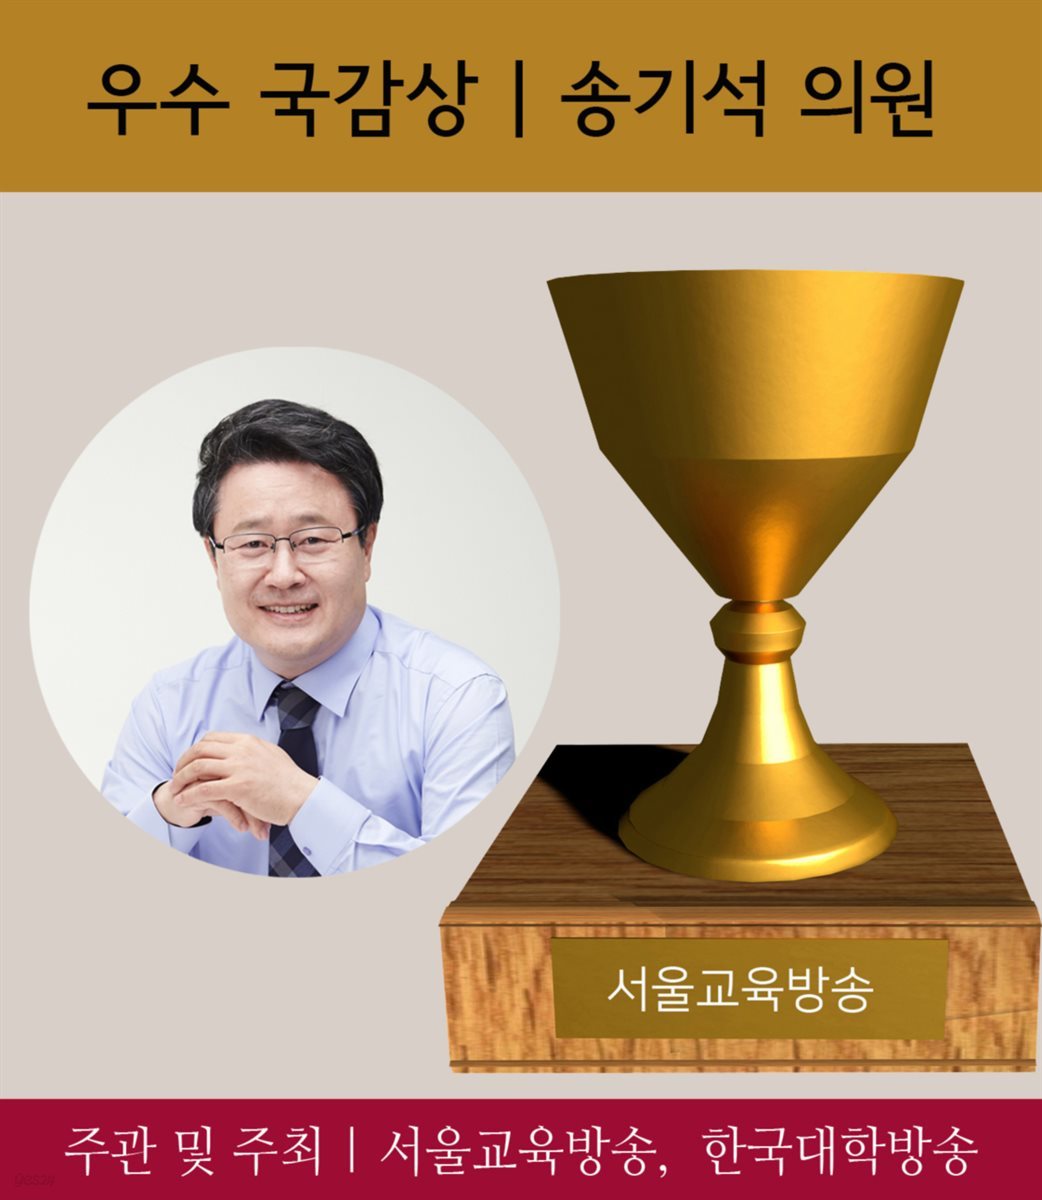 송기석 국회의원, 우수국감 의원에 선정 : 2017 가장 아름다운 인물대전-정치부문